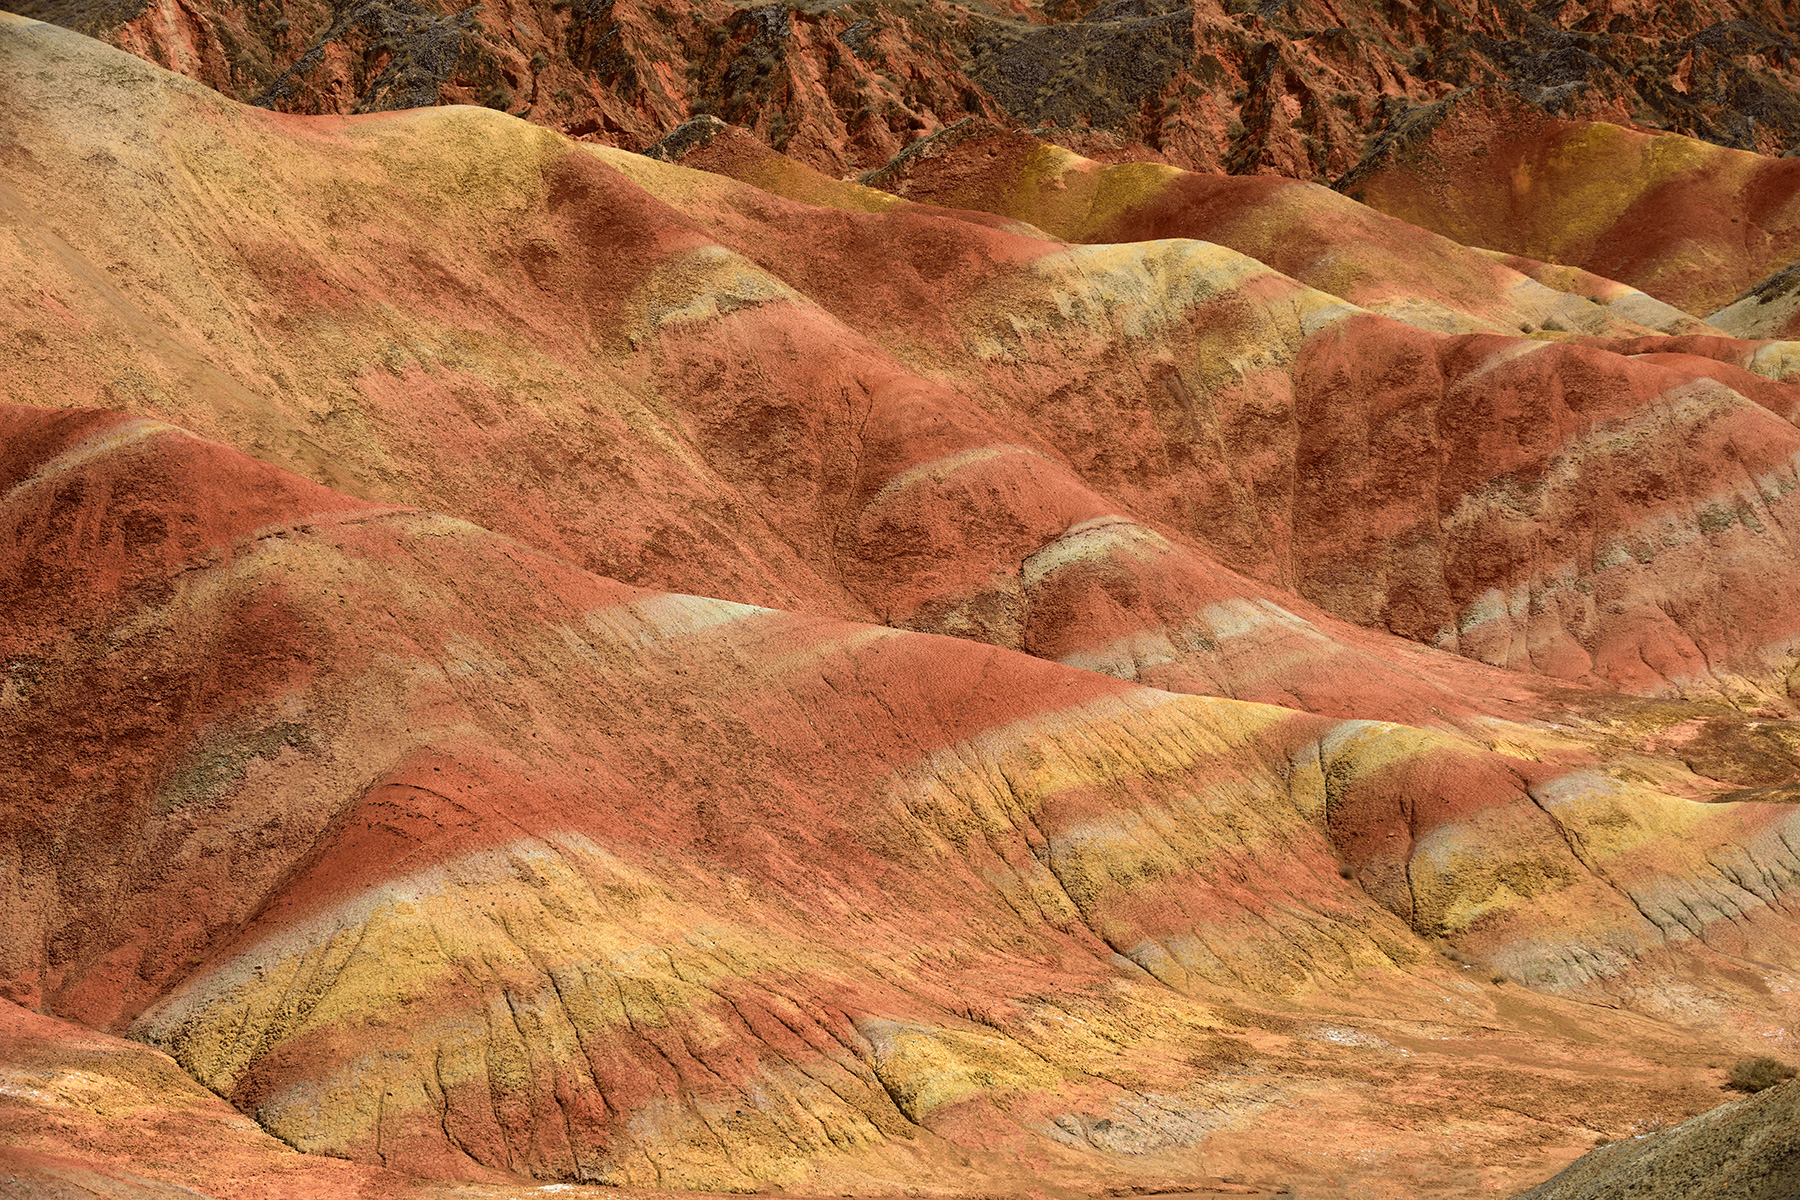 Parc géologique national de Zhangye Danxia (Chine, province de Gansu) - Détail des argiles colorées dans le secteur de Dragon Playing With Fire